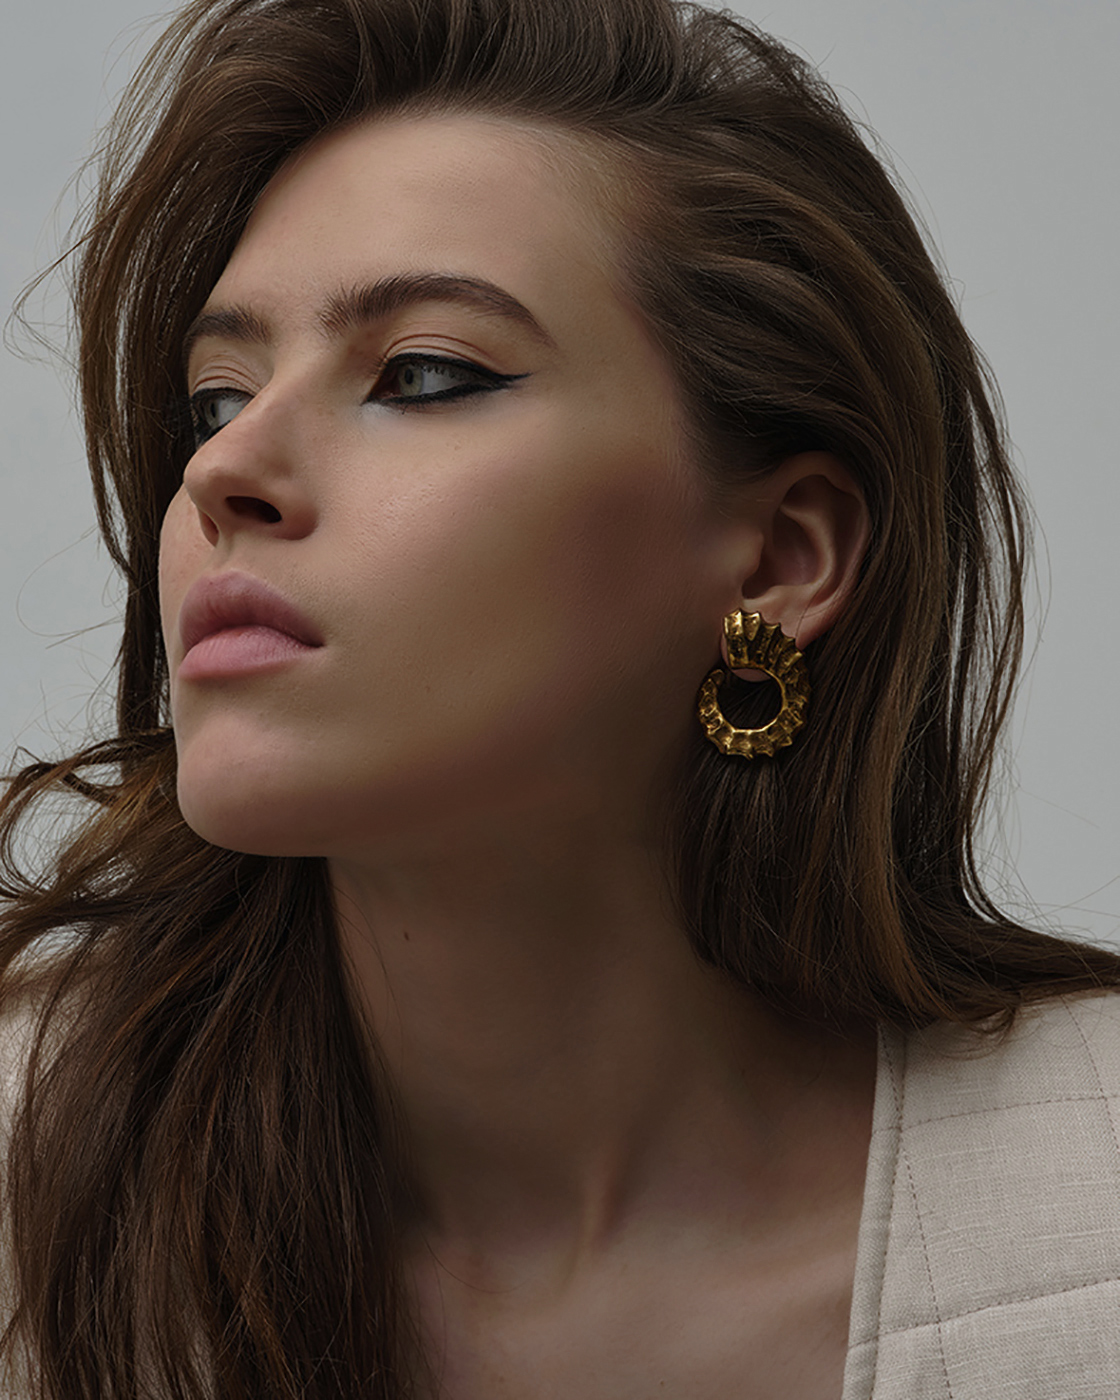 Gold-Plated Horn Earrings